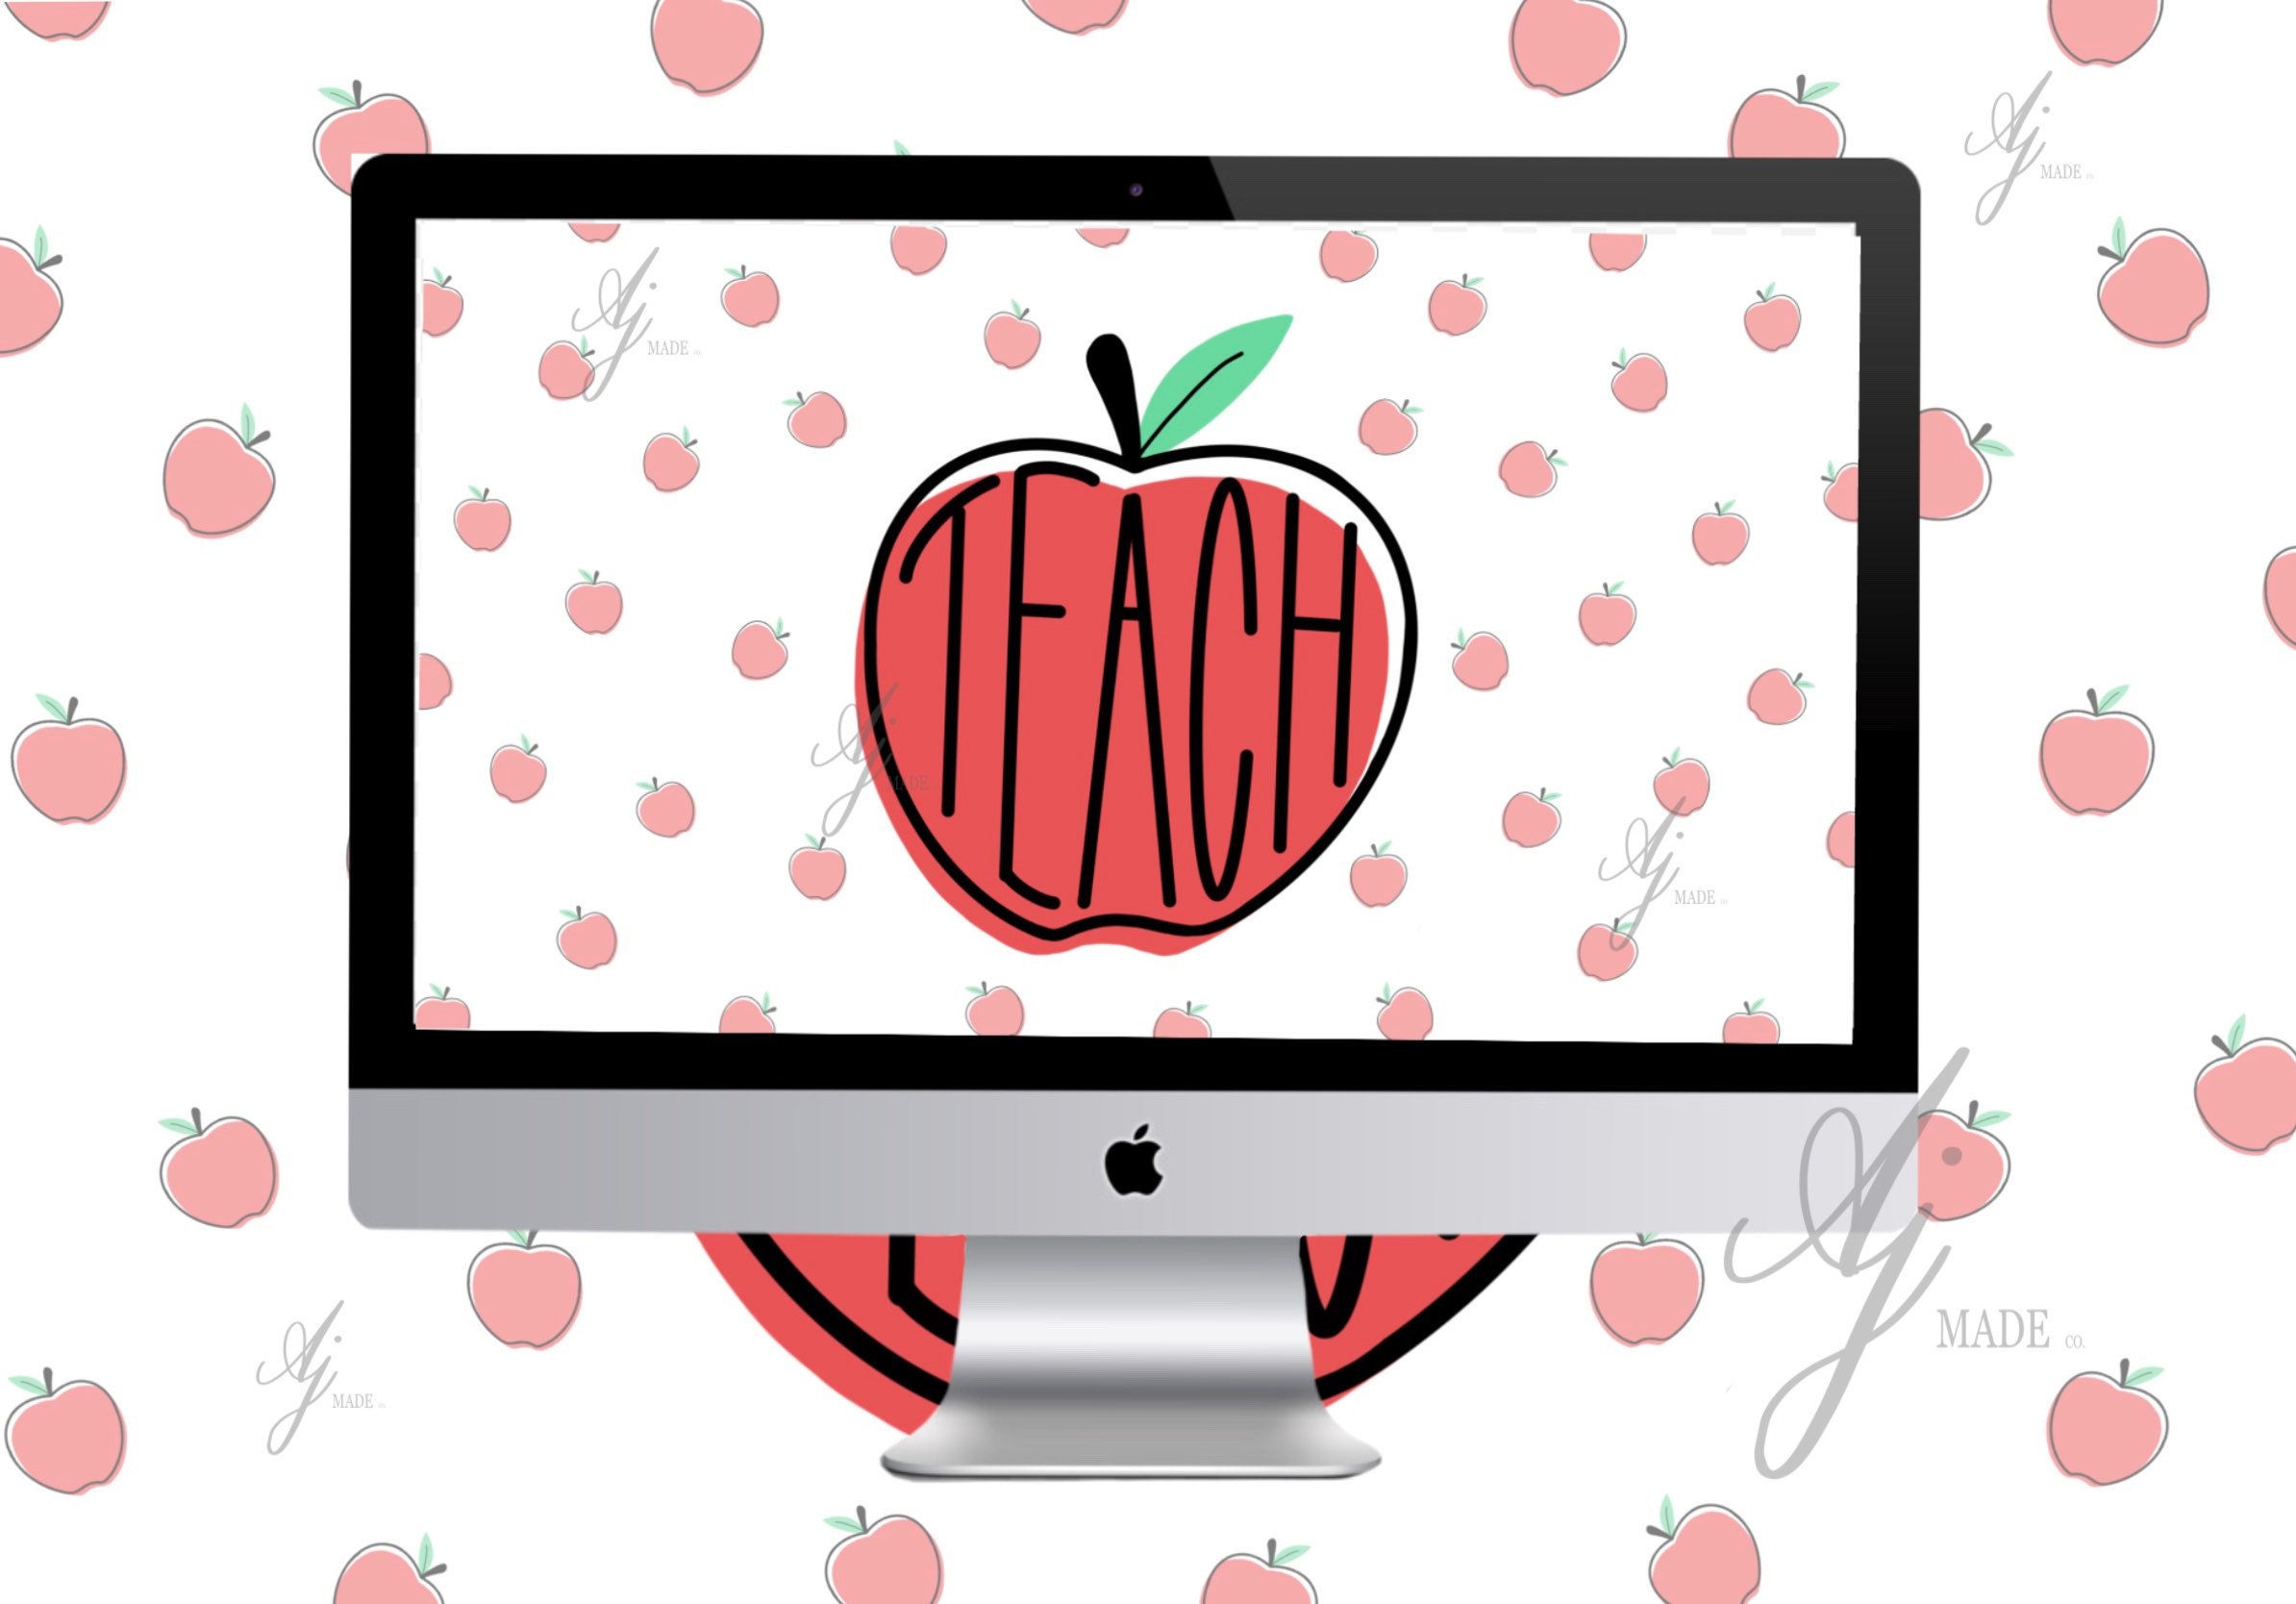 Hình nền máy tính TEACH Apple: Cập nhật hình nền máy tính TEACH Apple mới nhất để trang trí cho máy tính của bạn thêm phong cách và sáng tạo. Hình ảnh này sẽ giúp cho bạn cảm thấy thư giãn và sảng khoái khi làm việc với máy tính, tạo động lực tốt để làm việc hơn.